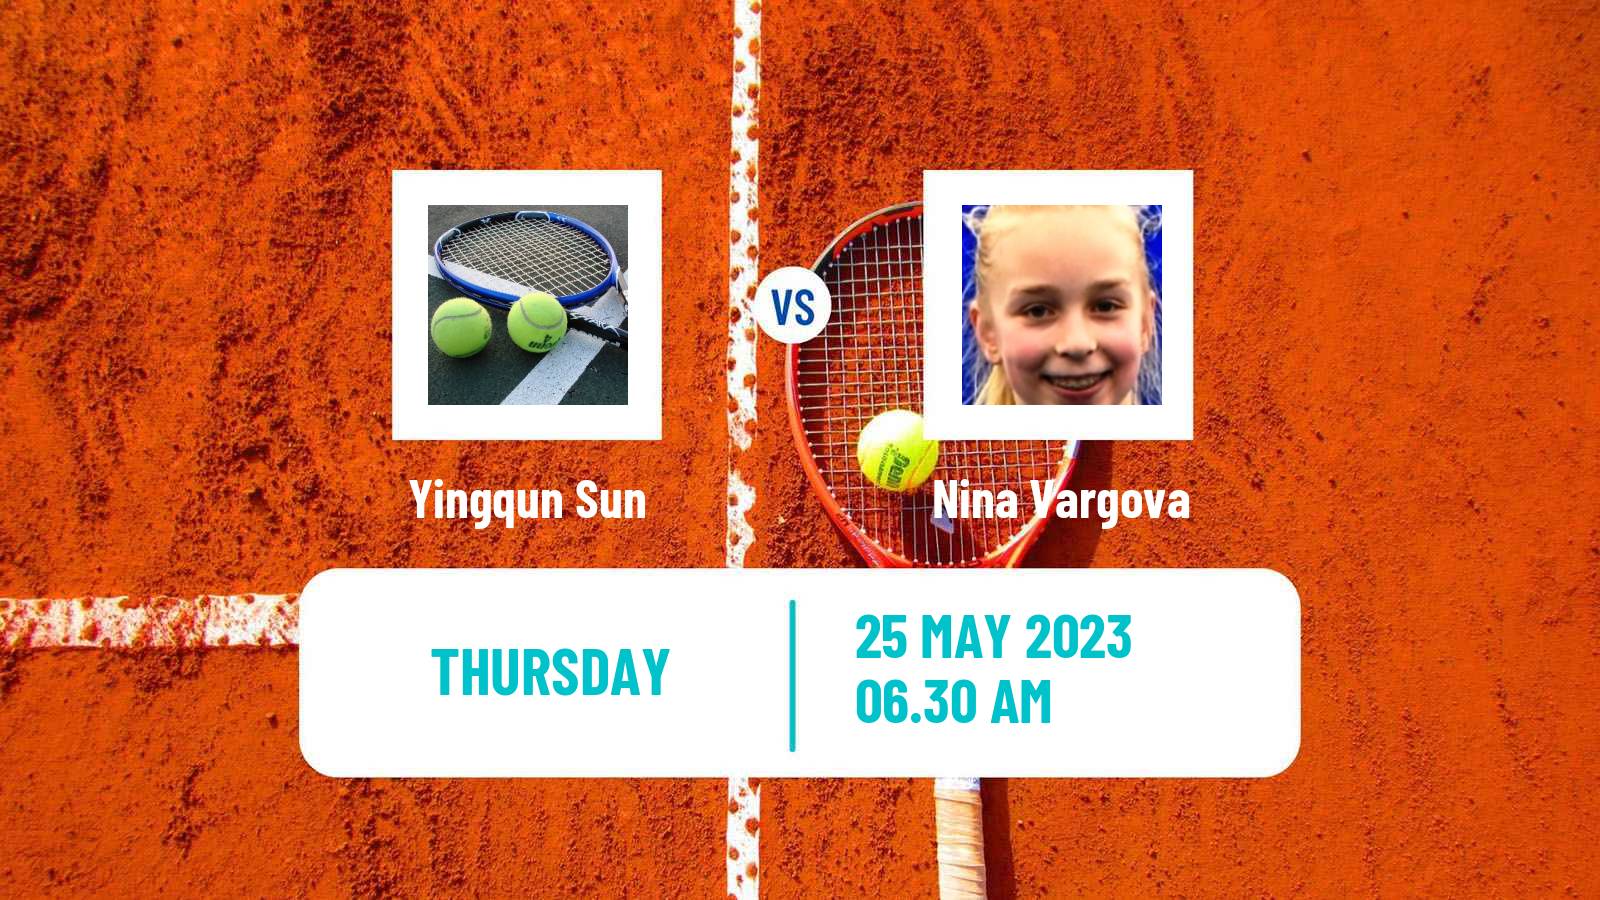 Tennis ITF W15 Kursumlijska Banja 5 Women Yingqun Sun - Nina Vargova